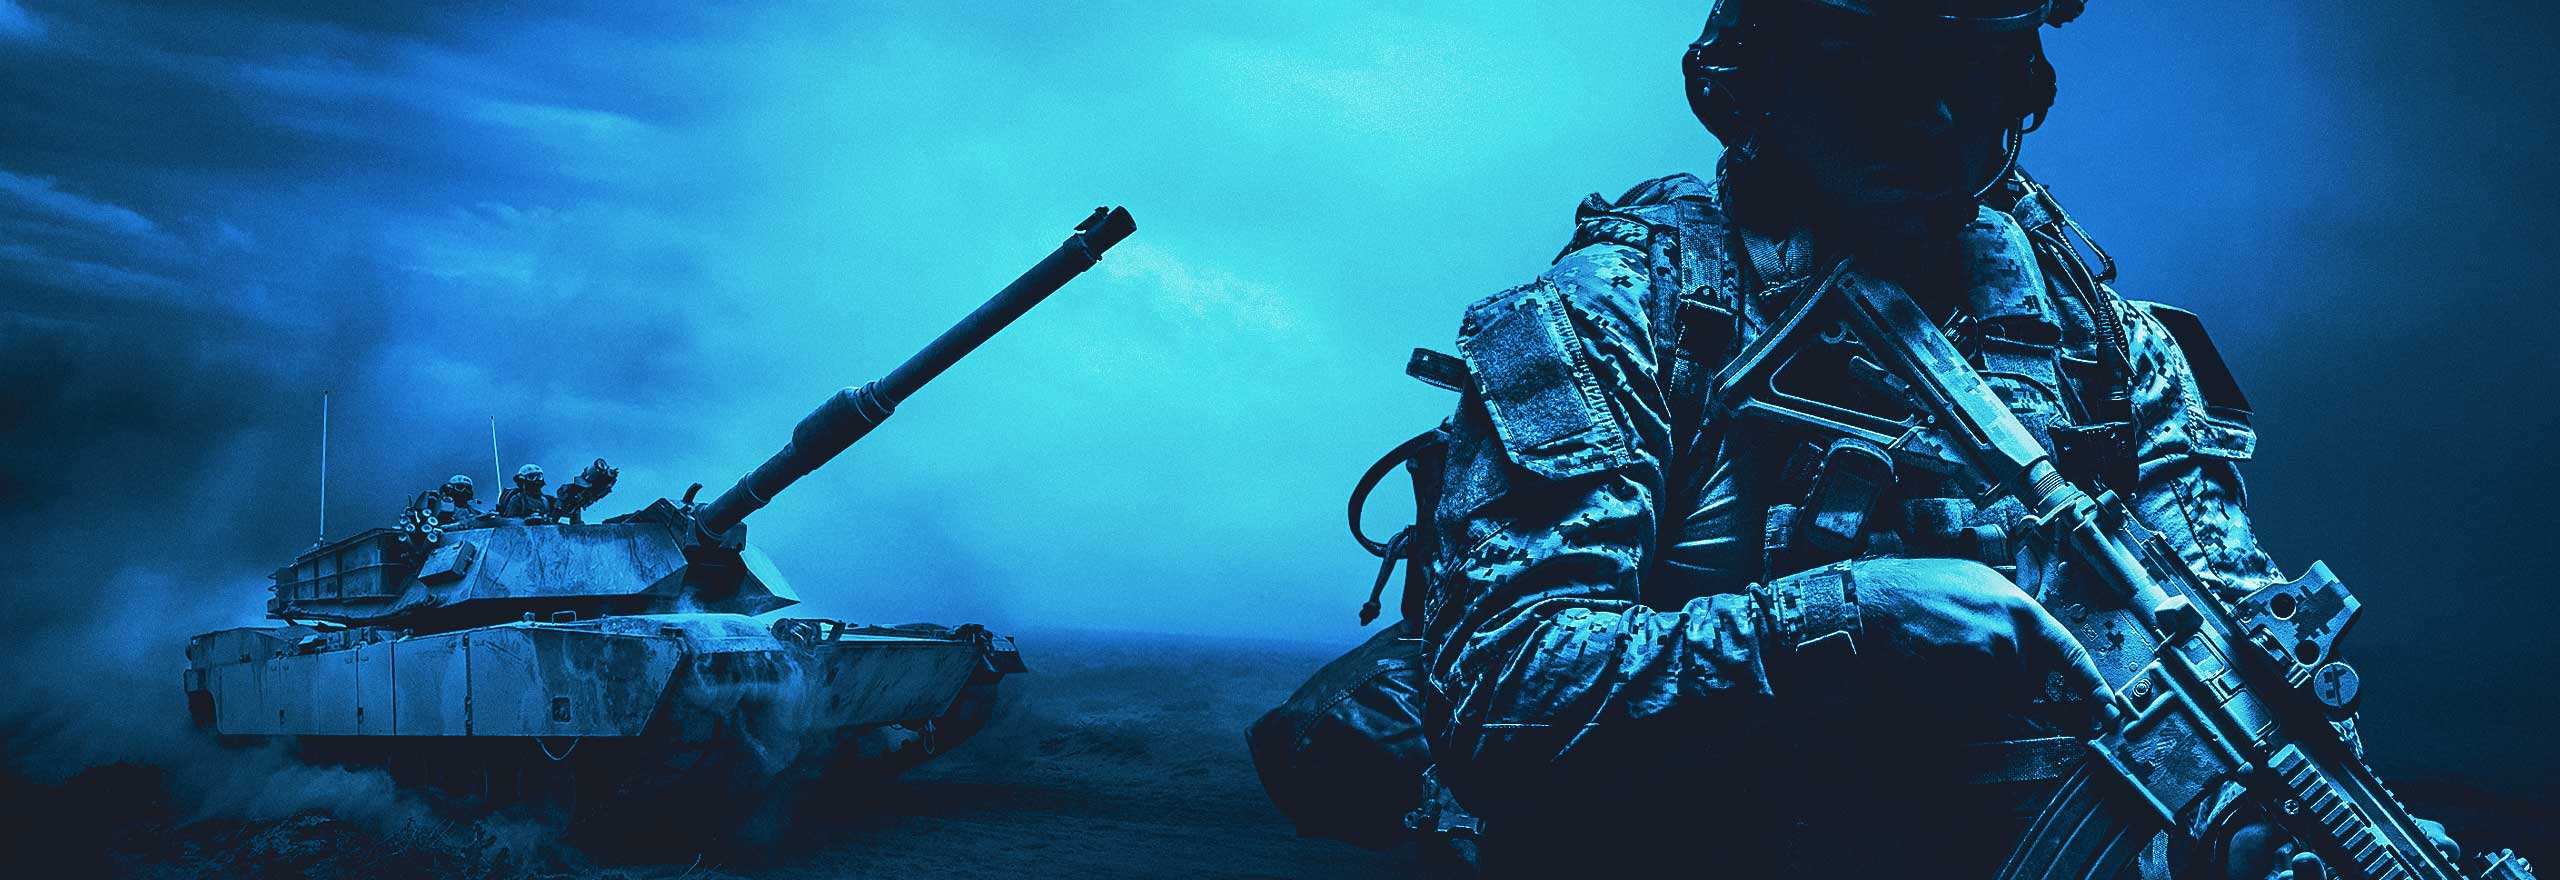 Blau getöntes Bild mit Soldaten, Panzer und Hubschraubern.